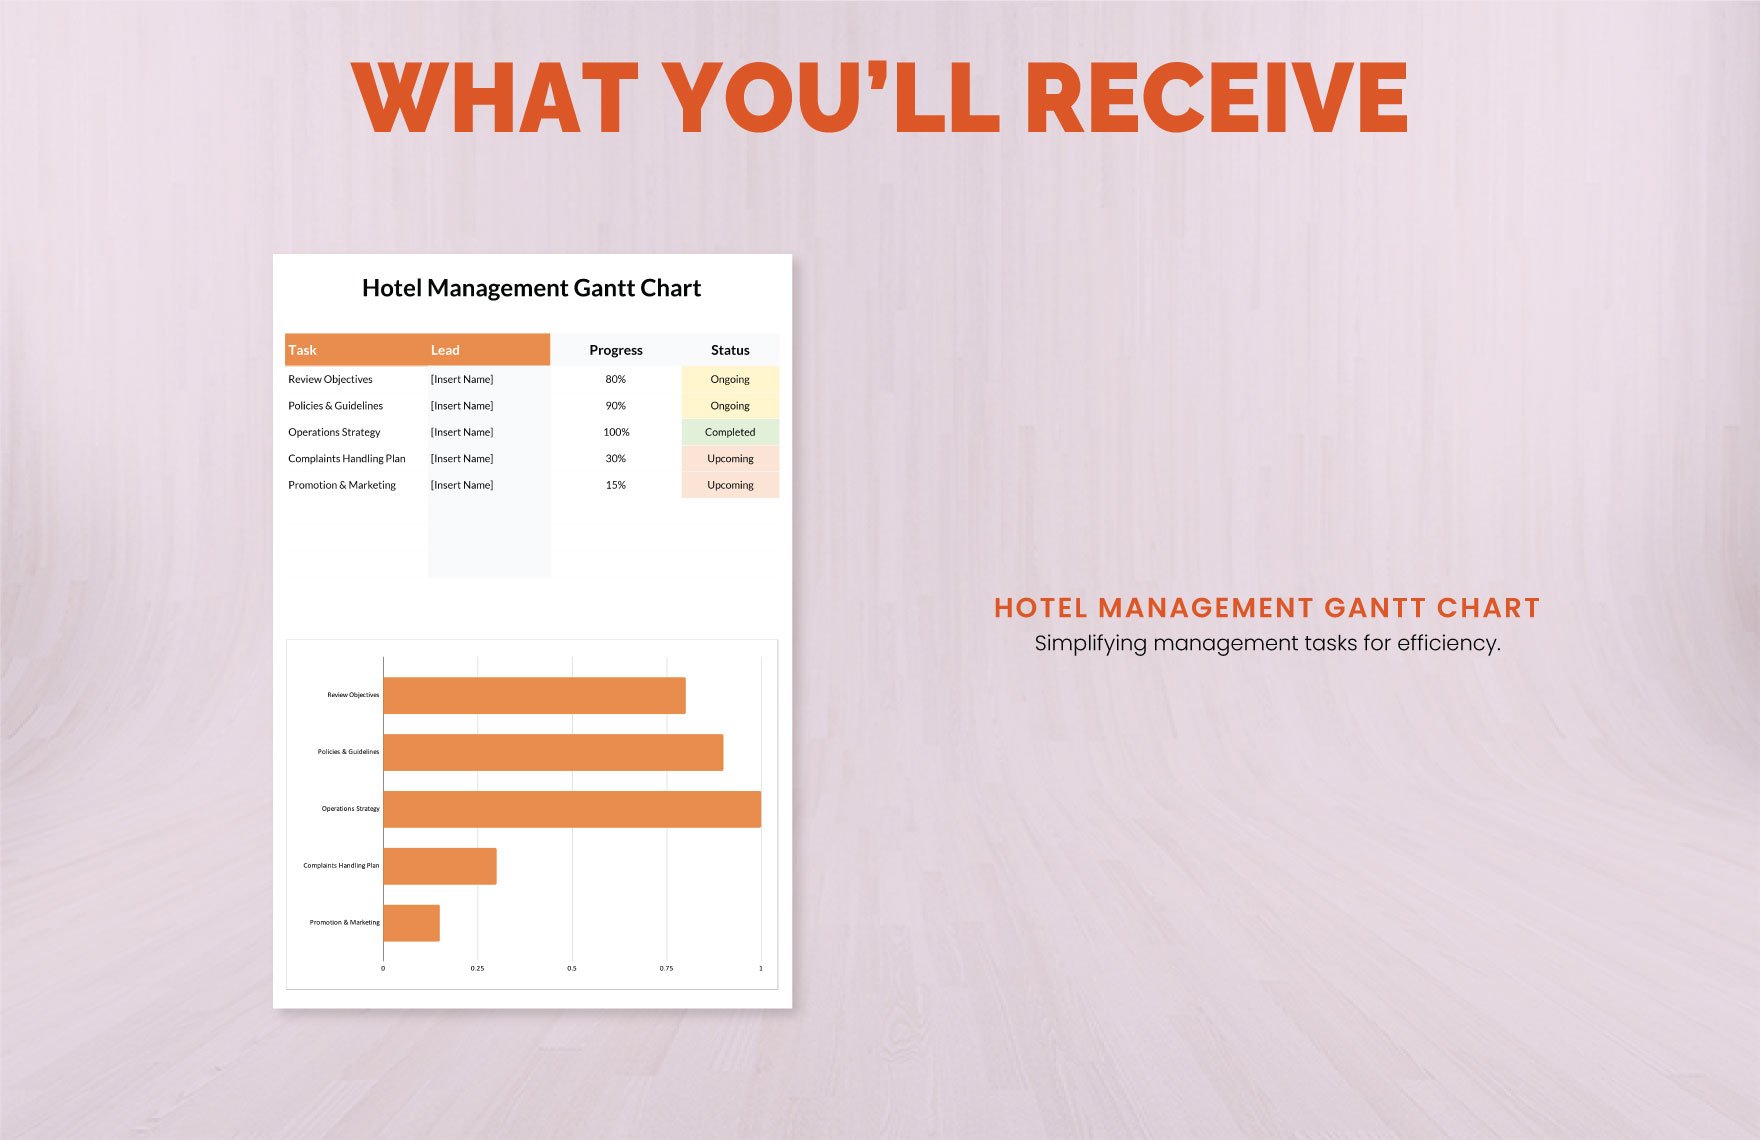 Hotel Management Gantt Chart Template